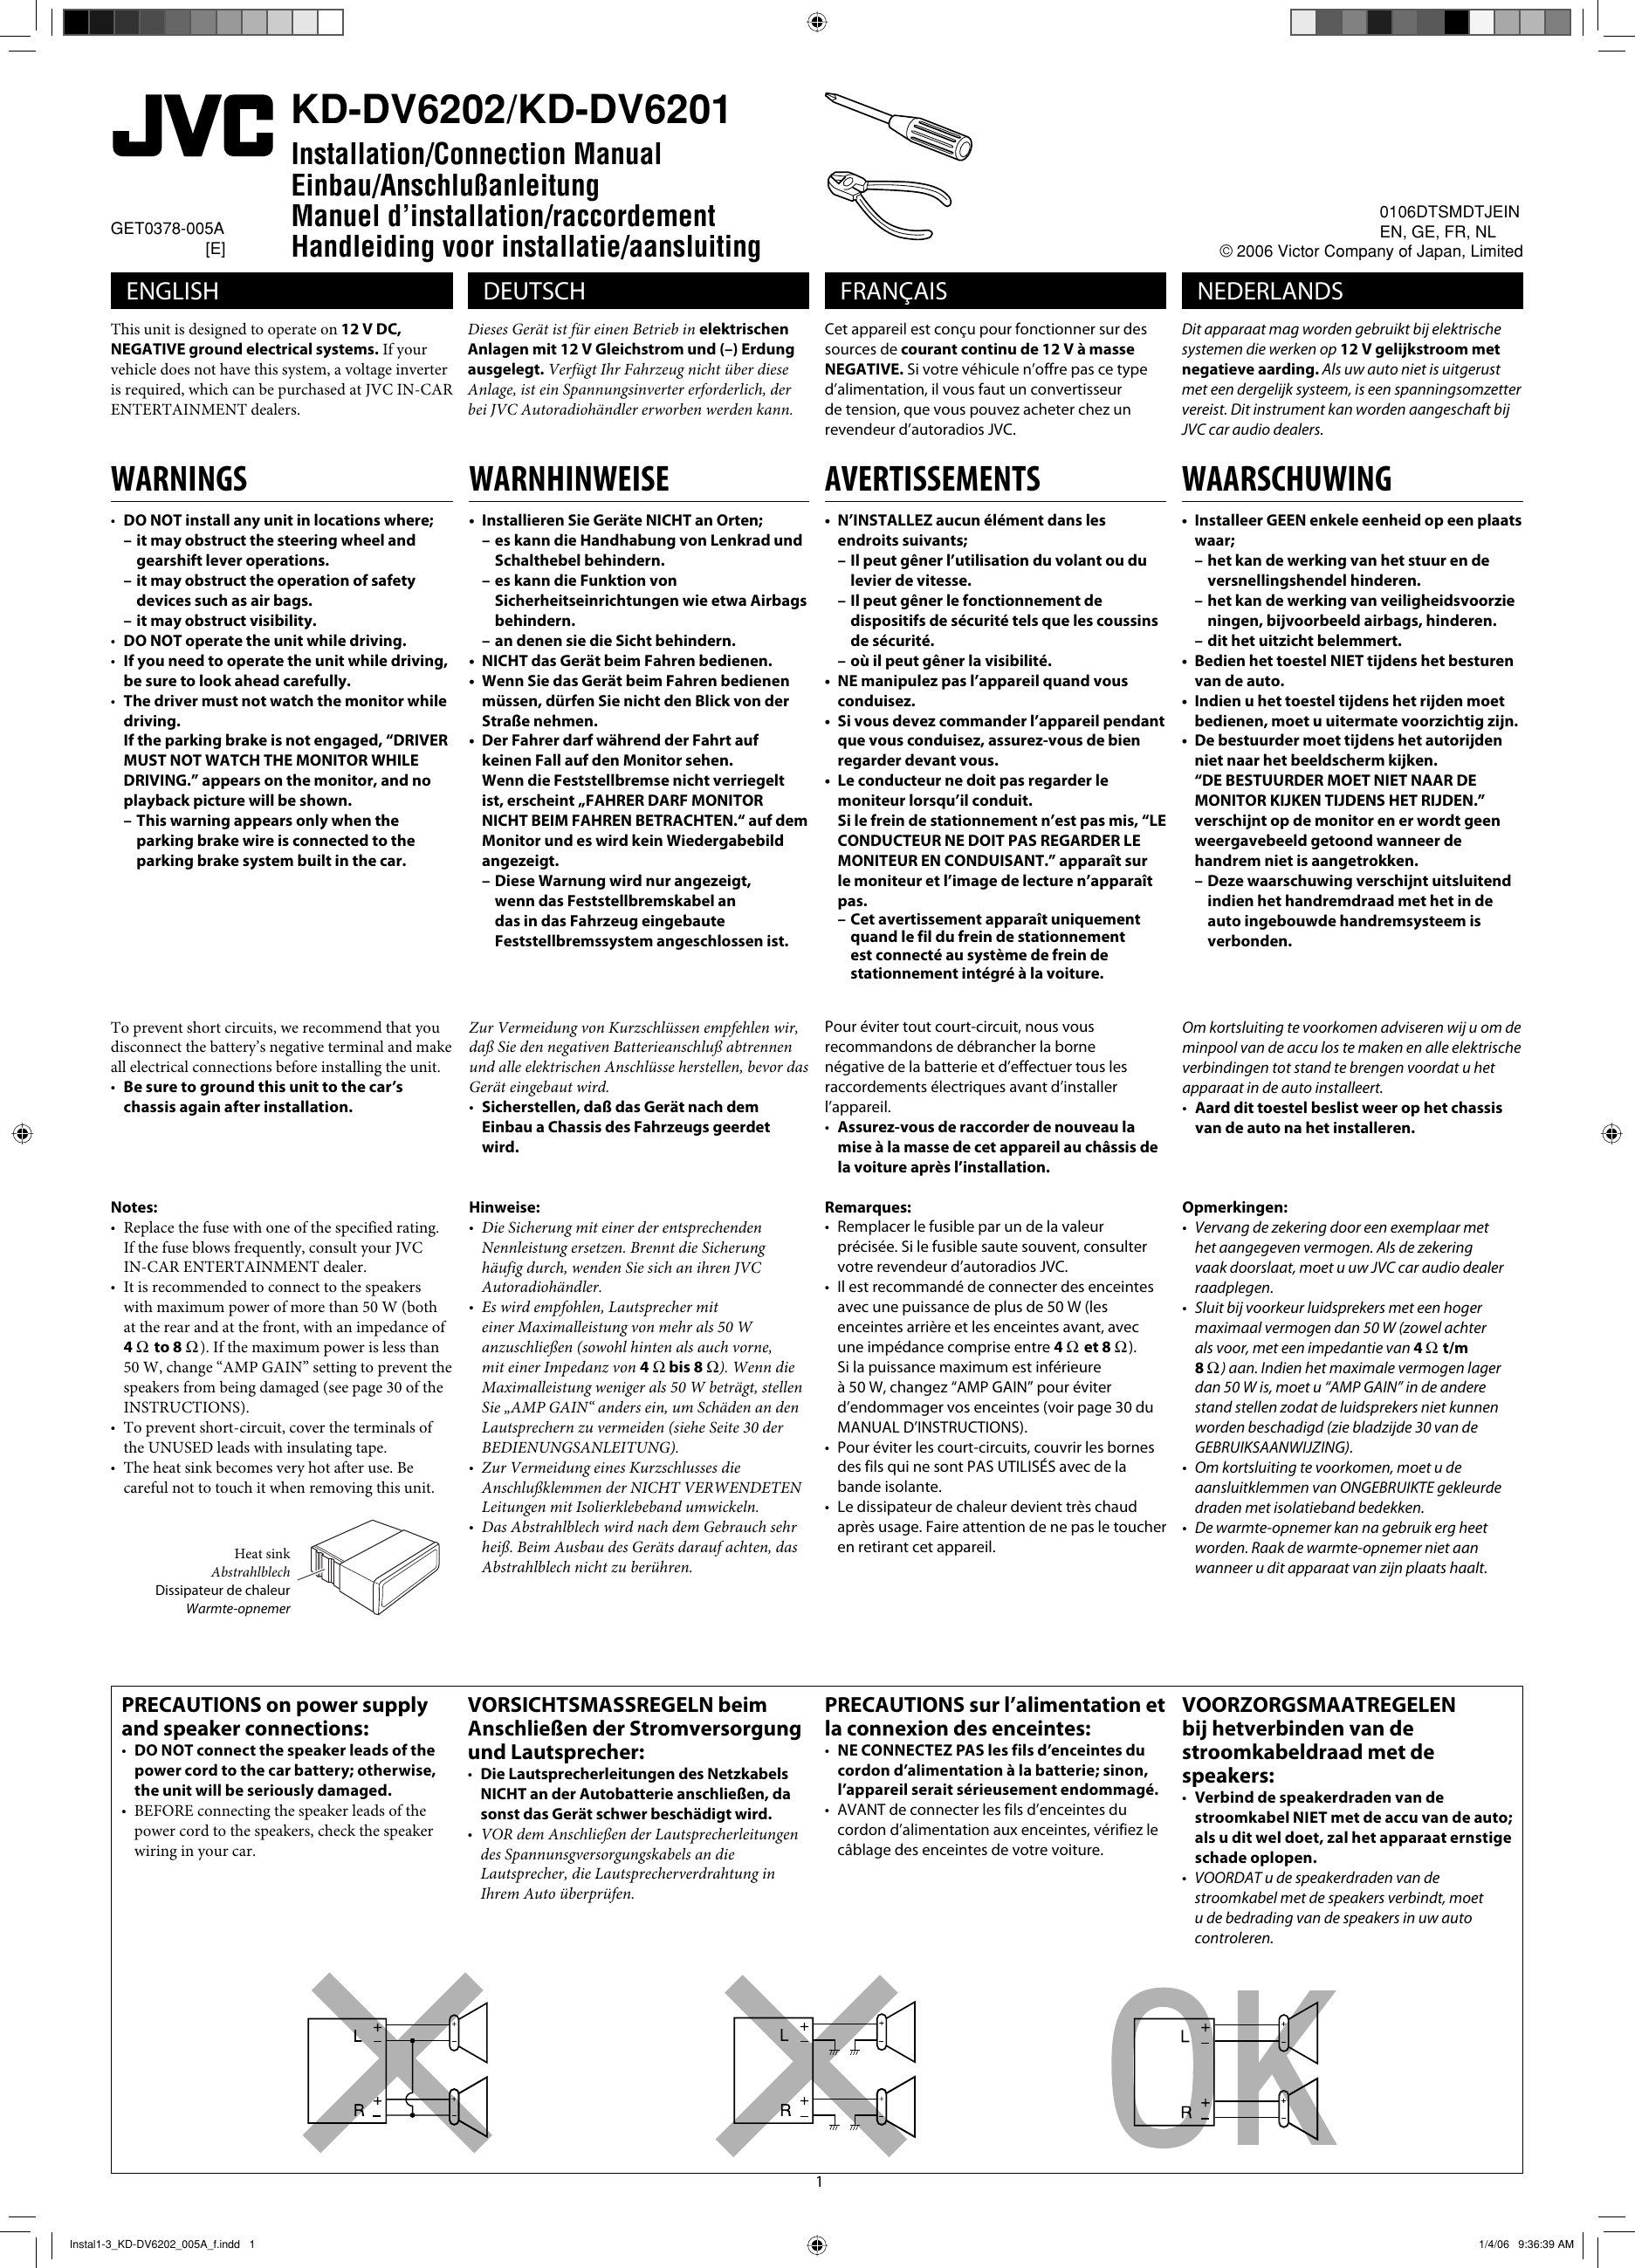 Page 1 of 6 - JVC KD-DV6201E Instal1-3_KD-DV6202_005A_f User Manual KD-DV6201E, KD-DV6202E GET0378-005A